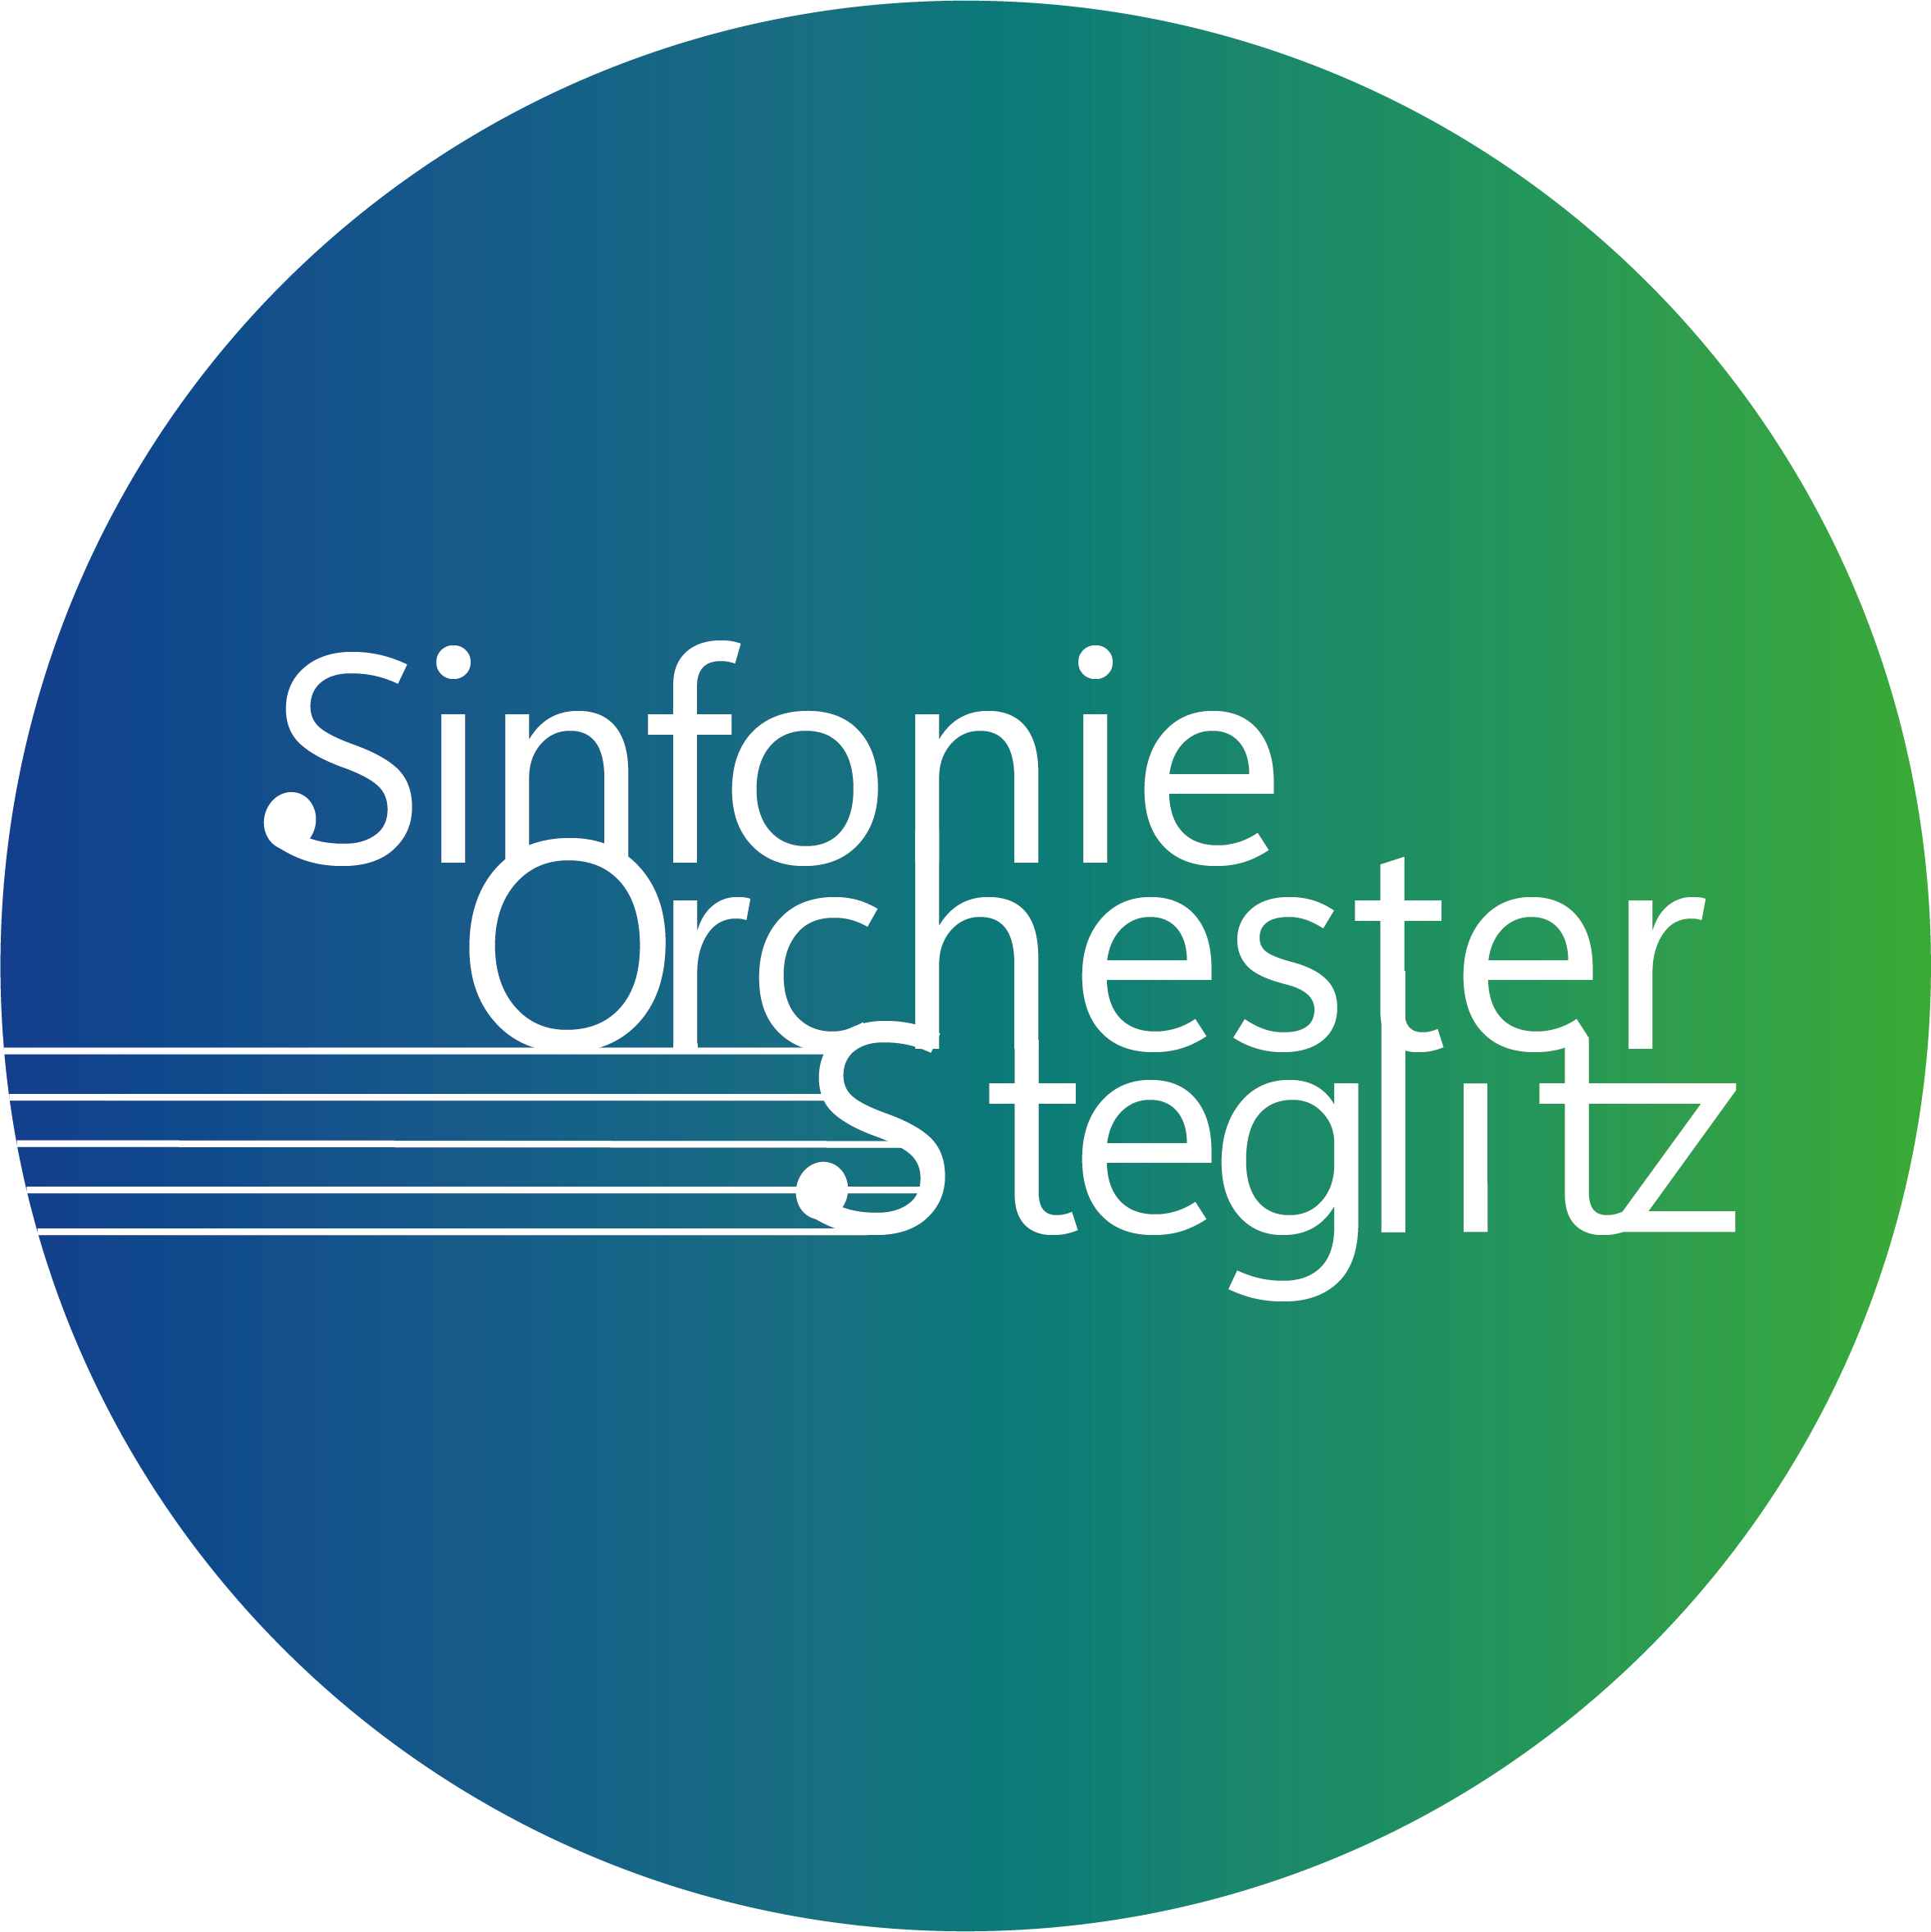 Sinfonieorchester Steglitz